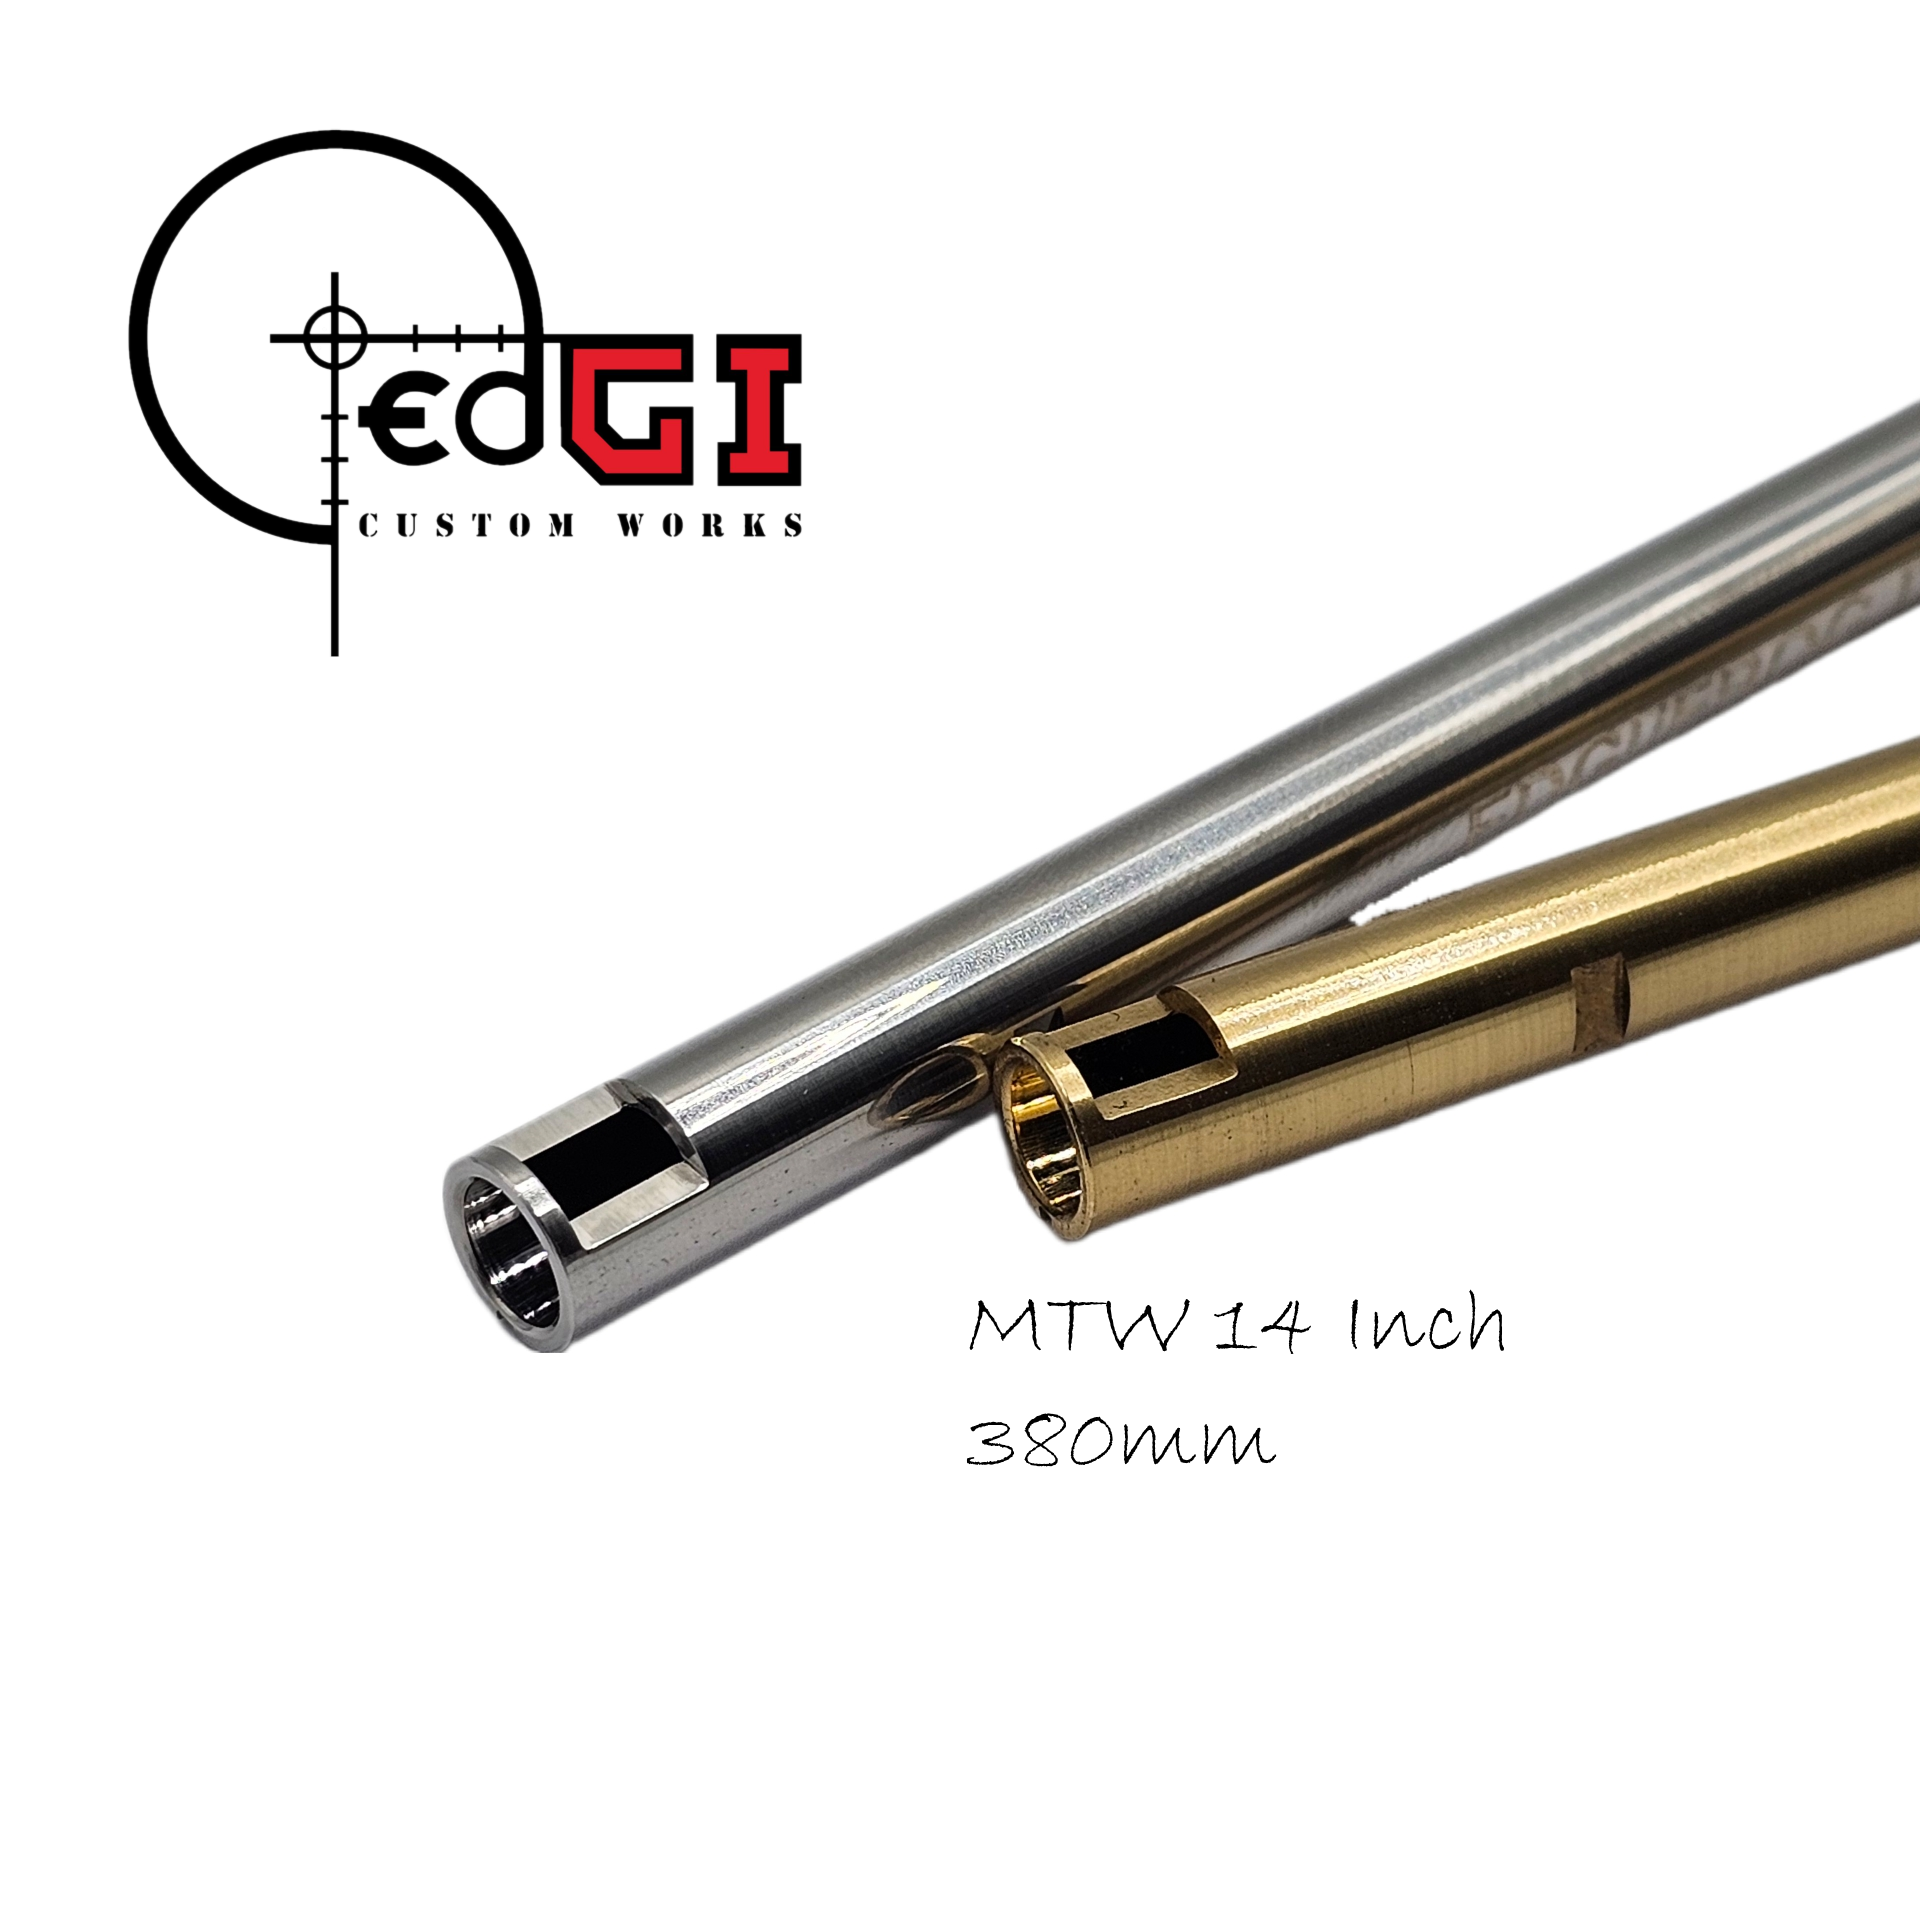 Edgi Custom Works - 380mm AEG Inner Barrel - MTW 14"